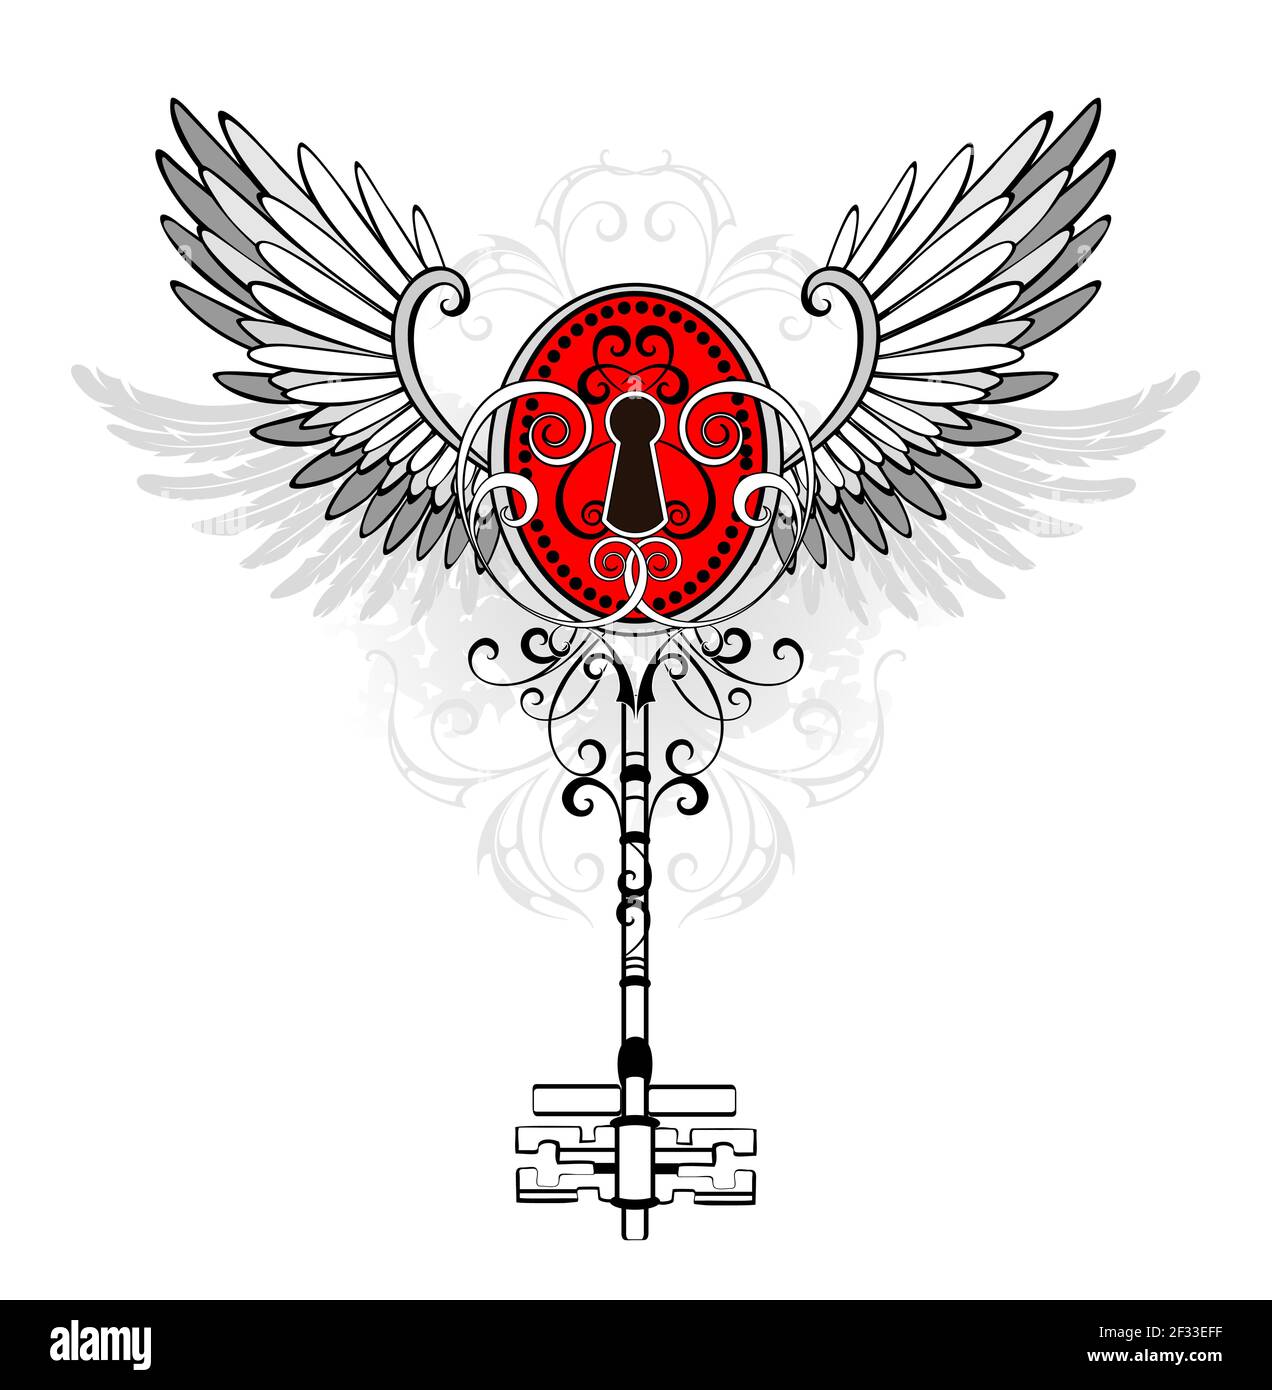 Kontur, gemusterter, antiker Schlüssel mit rotem Schlüsselloch, verziert mit grauen Flügeln auf weißem Hintergrund. Steampunk-Style. Stock Vektor